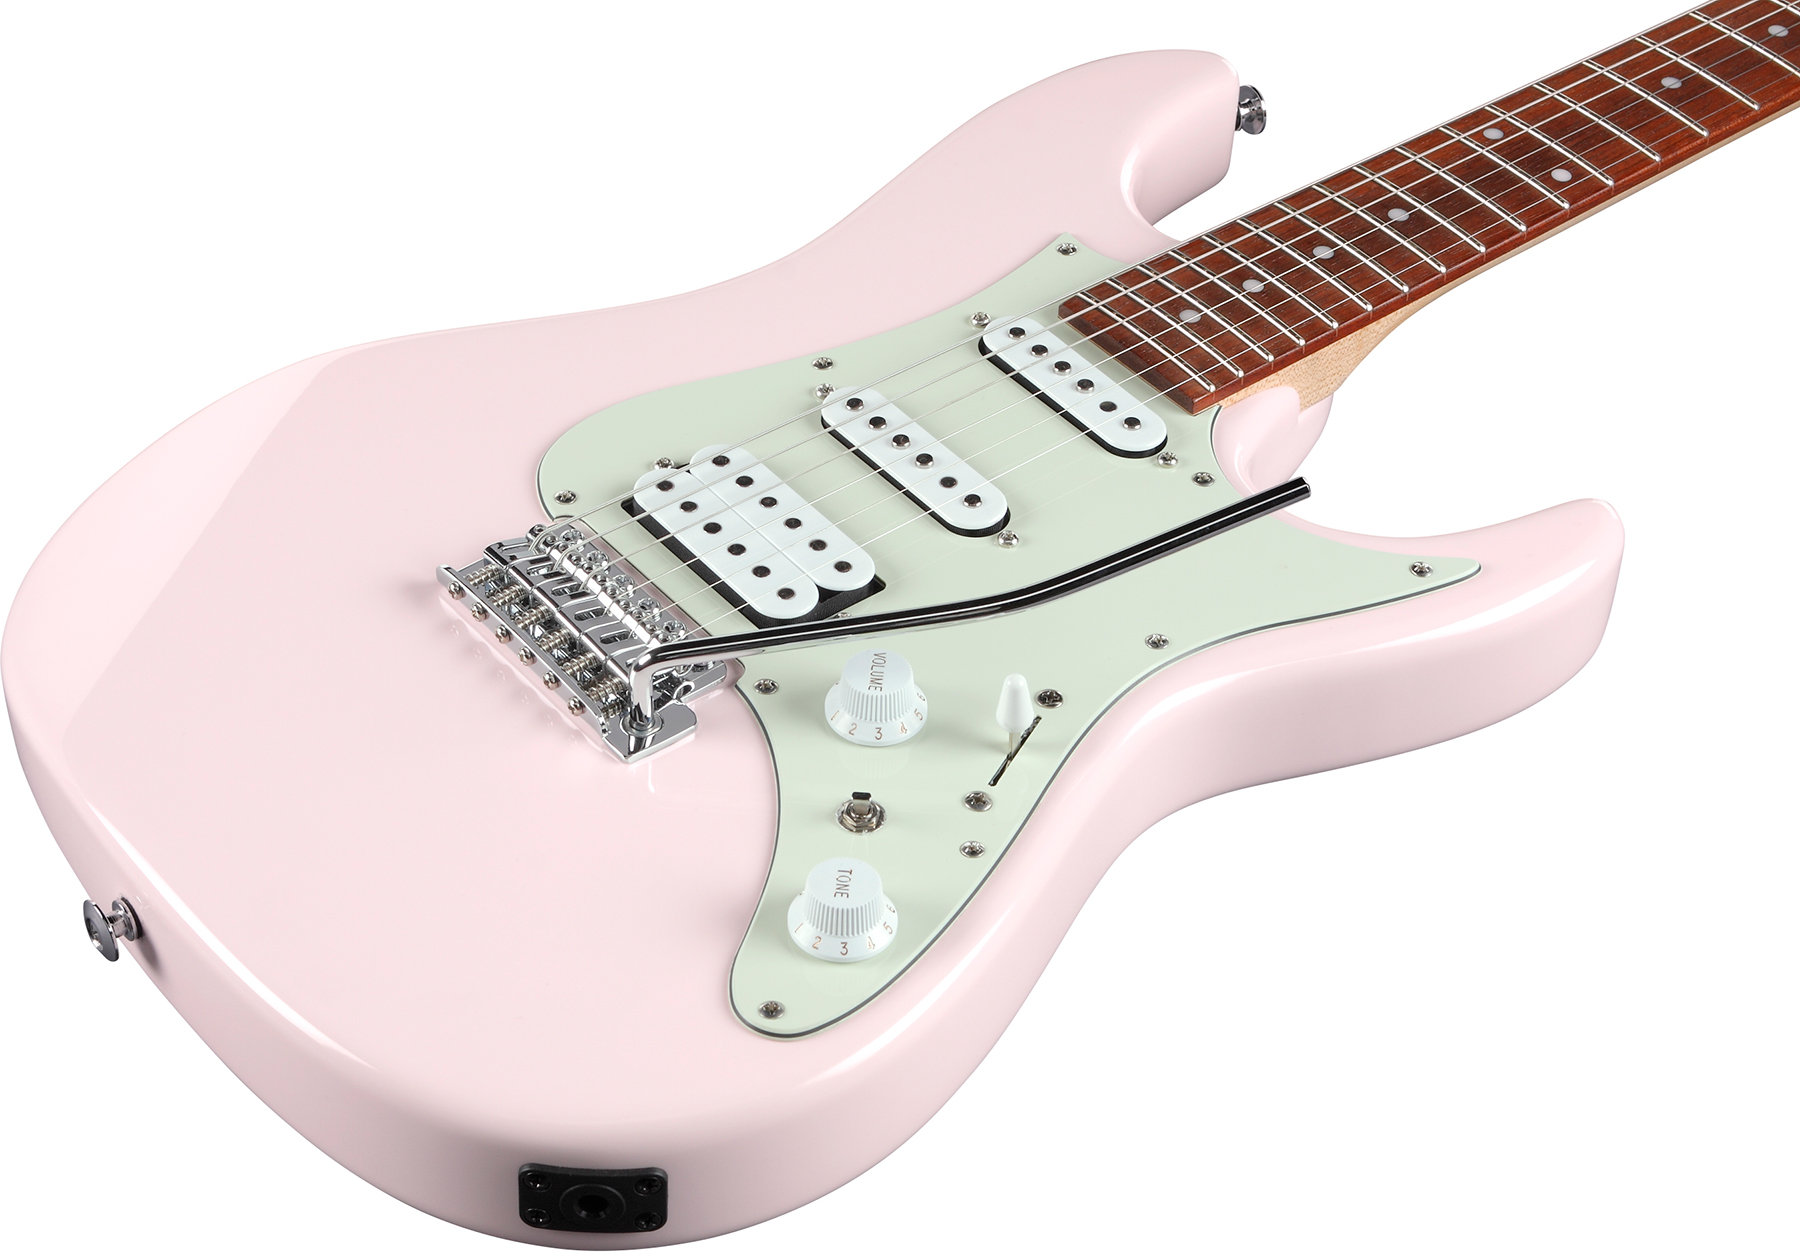 Ibanez Azes40 Ppk Standard Hss Trem Jat - Pastel Pink - E-Gitarre in Str-Form - Variation 2